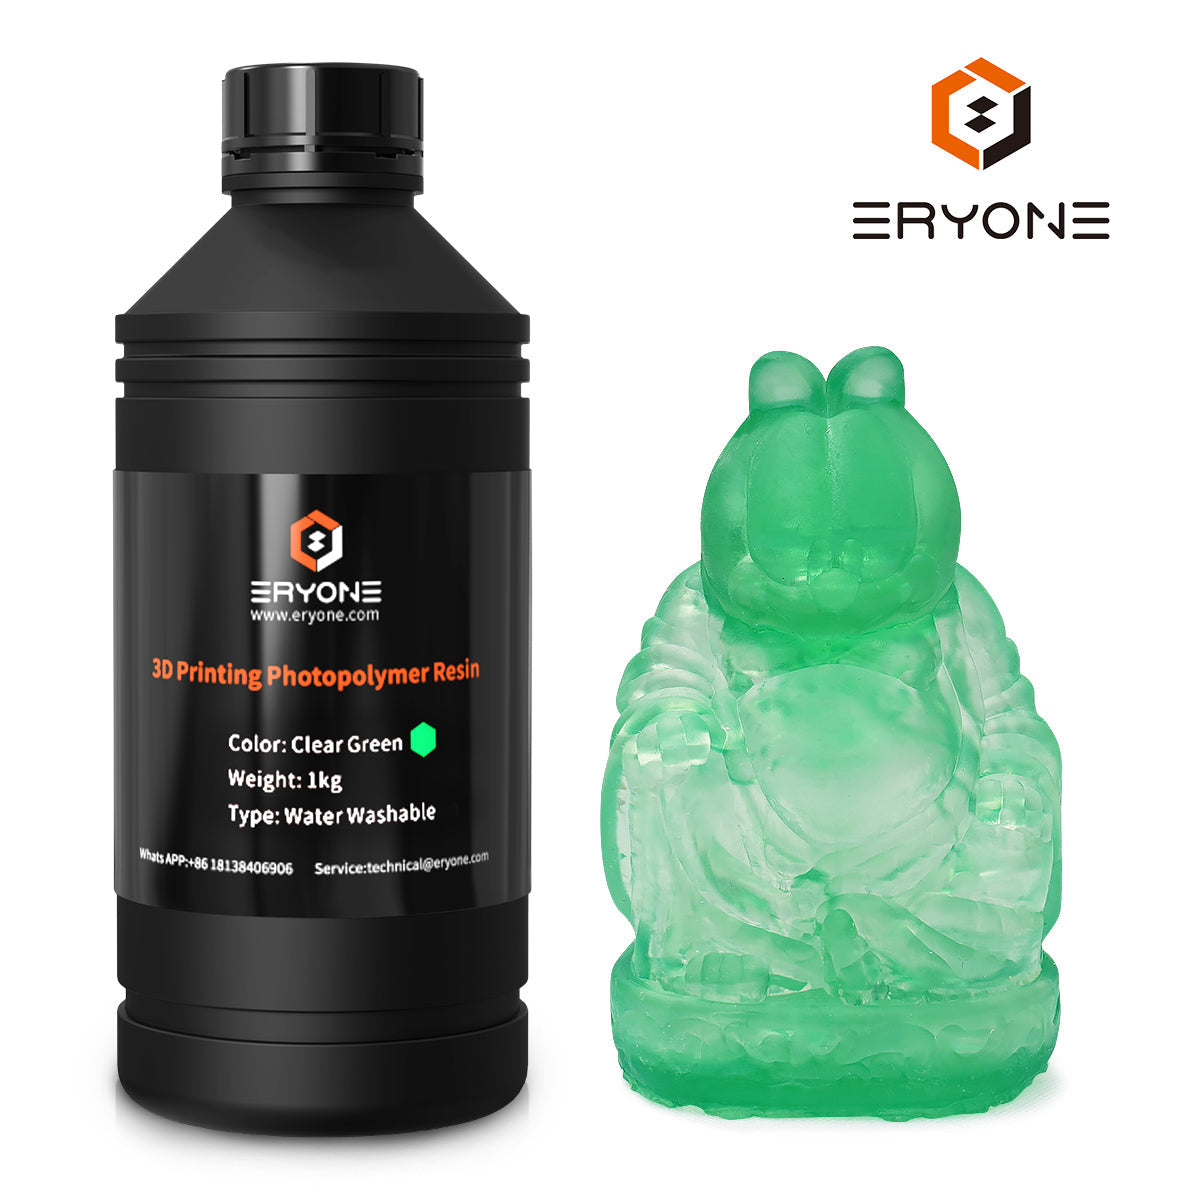 Eryone water washable 3D printer resin 1KG